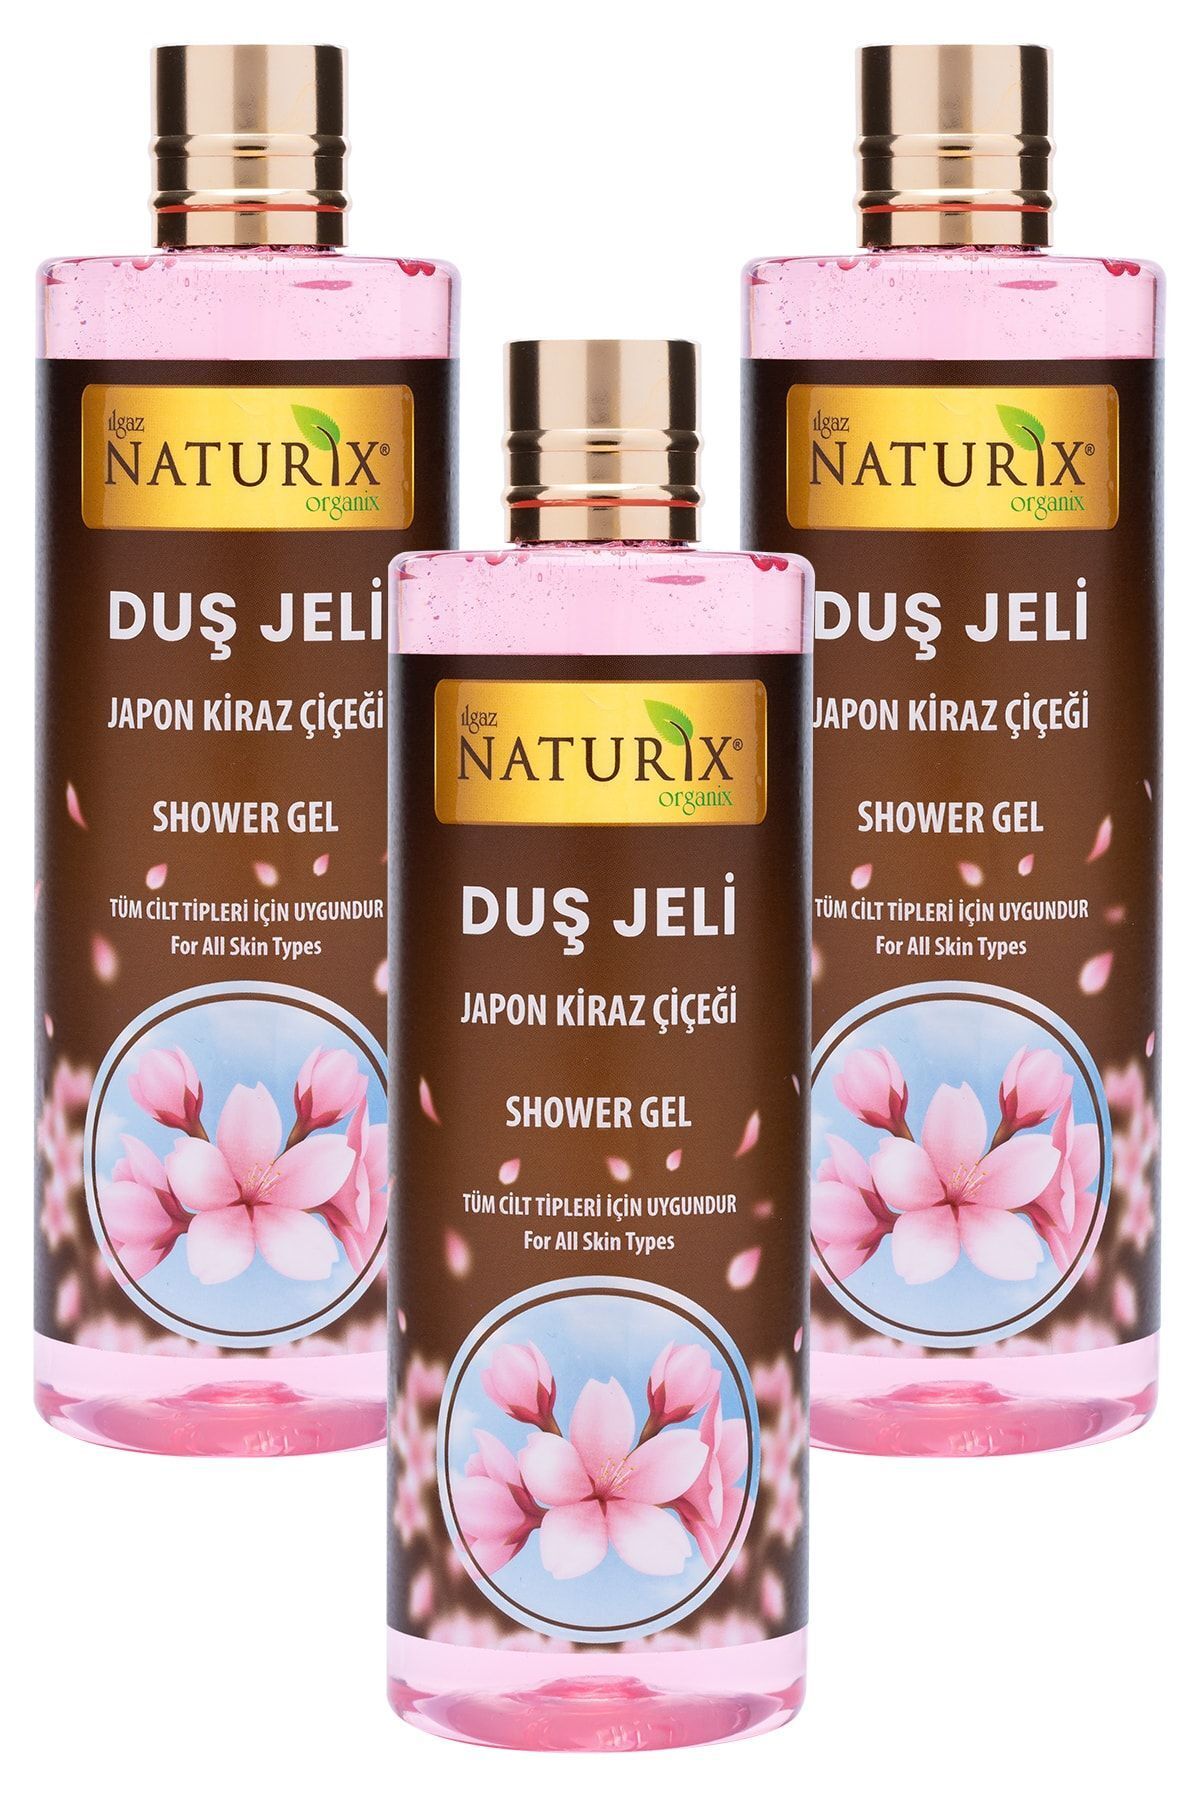 Ilgaz Naturix Organix Aroma Terapi Duş Jeli Japon Kiraz Çiçeği Duş Jeli Kalıcı Kokulu Banyo Jeli 400 Ml 3'lü Banyo Seti